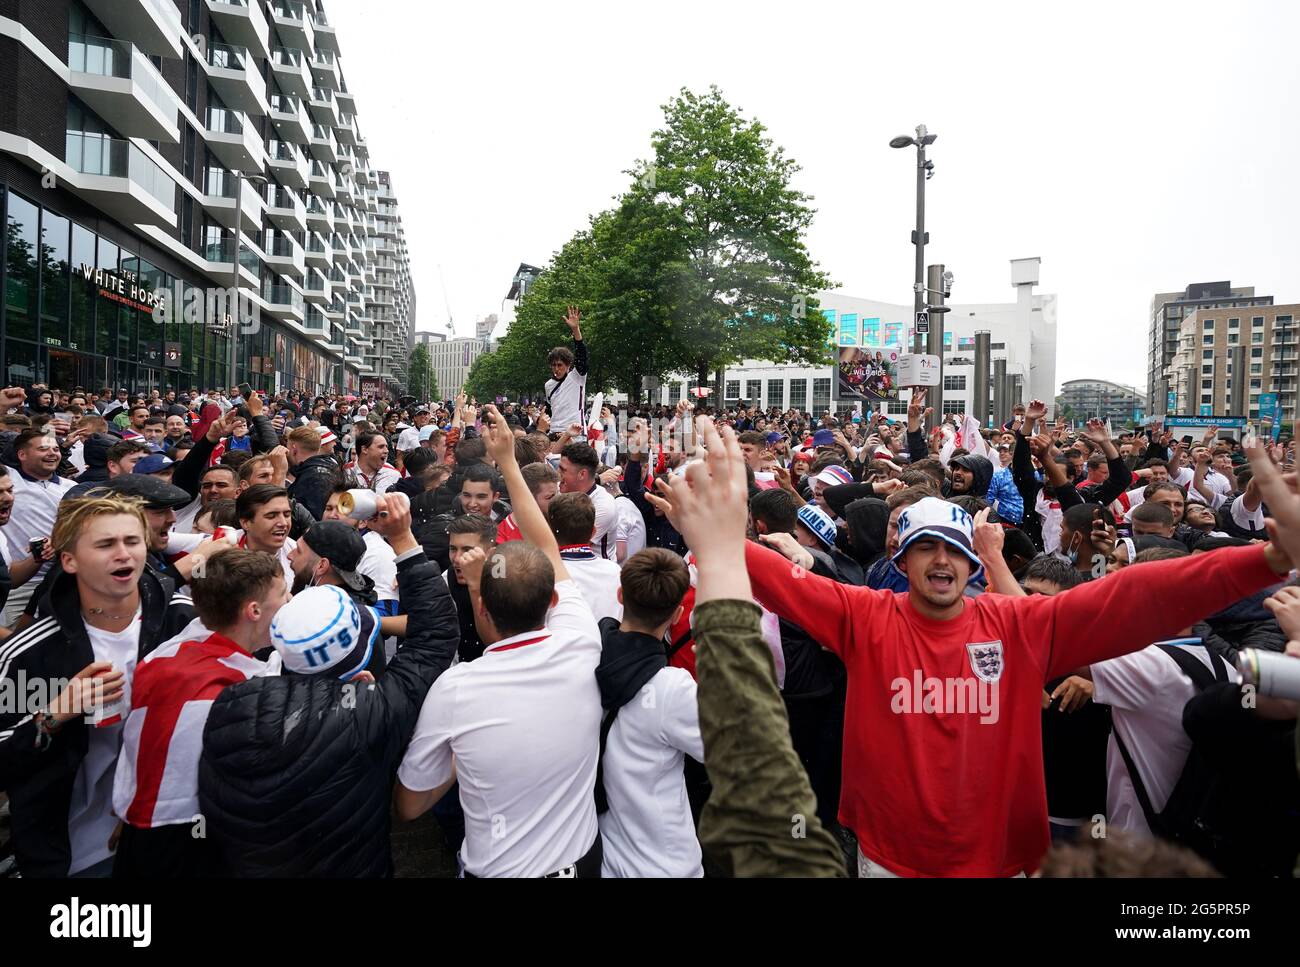 Die Fans kommen vor dem UEFA Euro 2020-Spiel 16 zwischen England und Deutschland in der 4TheFans-Fanzone vor dem Wembley-Stadion in Wembley an. Bilddatum: Dienstag, 29. Juni 2021. Stockfoto